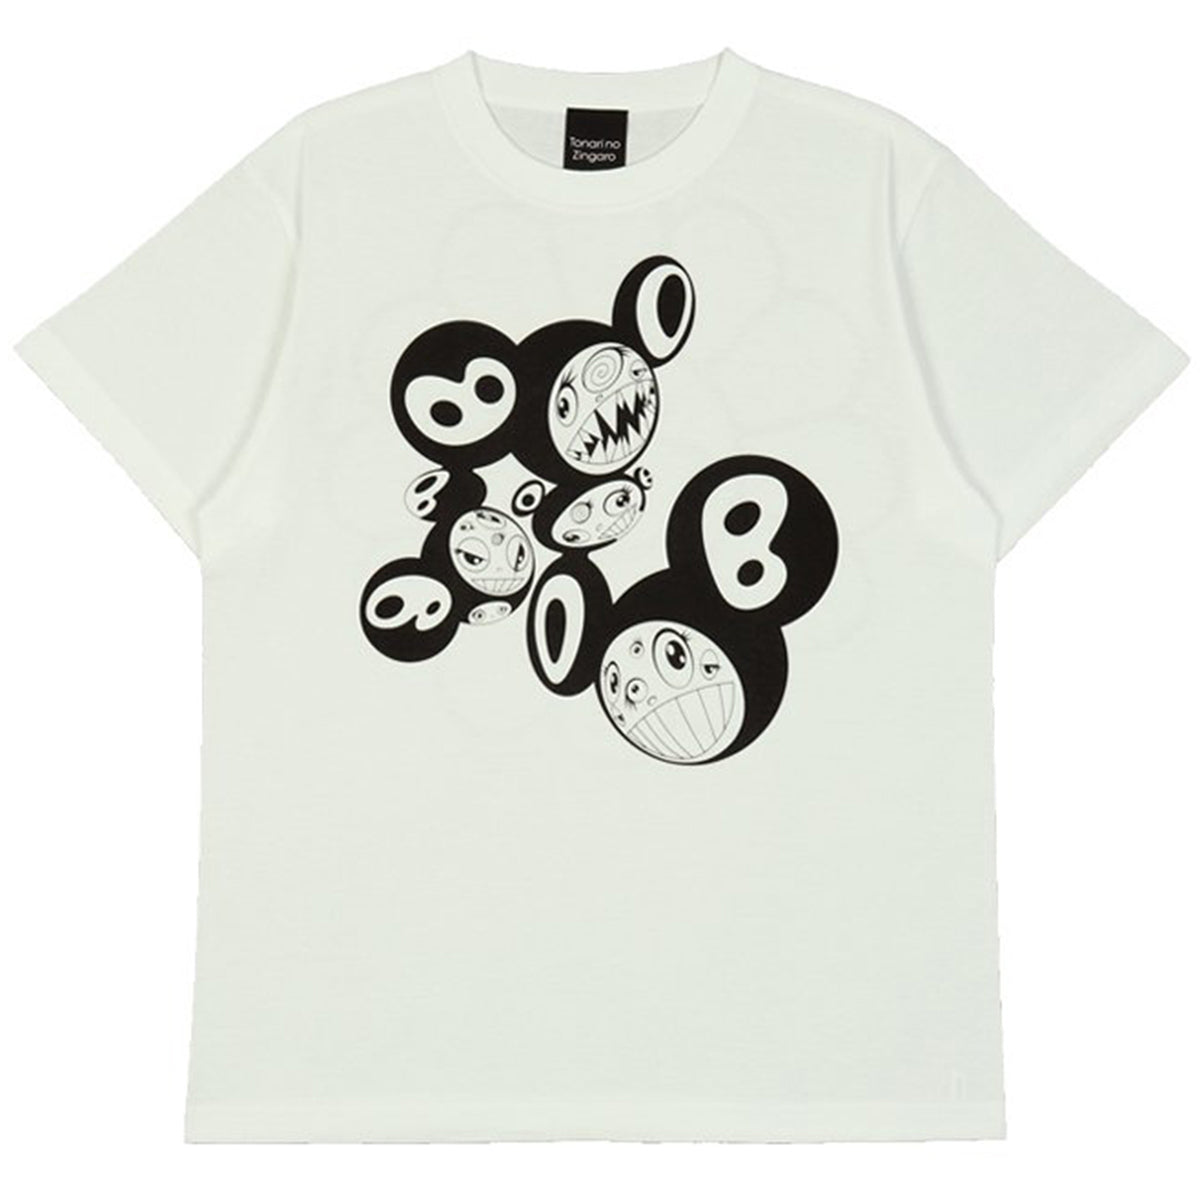 Takashi Murakami / kaikai kiki ( 村上隆 / カイカイキキ) × Tシャツ 